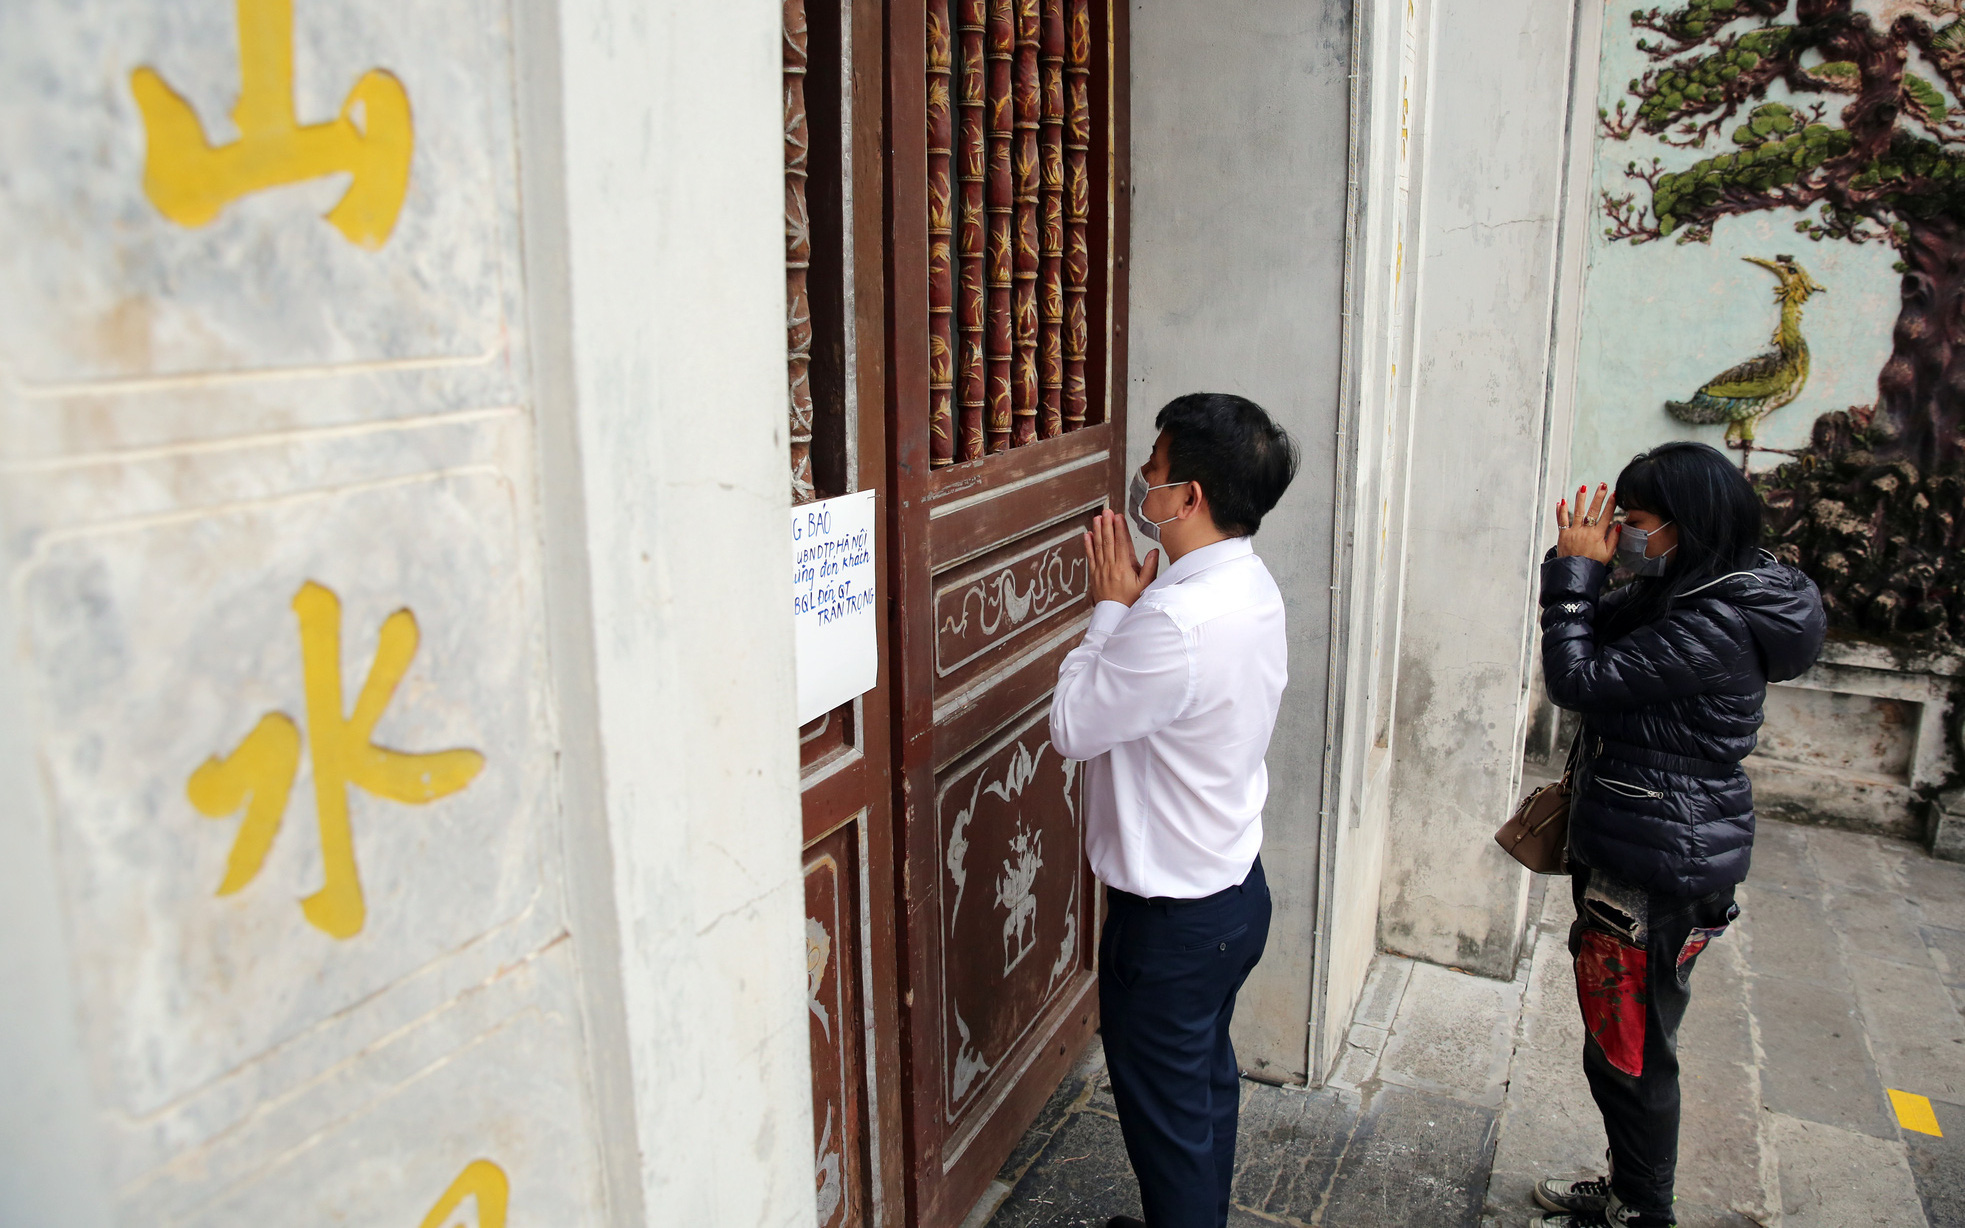 Đền chùa tại Hà Nội đóng cửa, người dân vái vọng qua khung cửa cầu may mắn và tài lộc